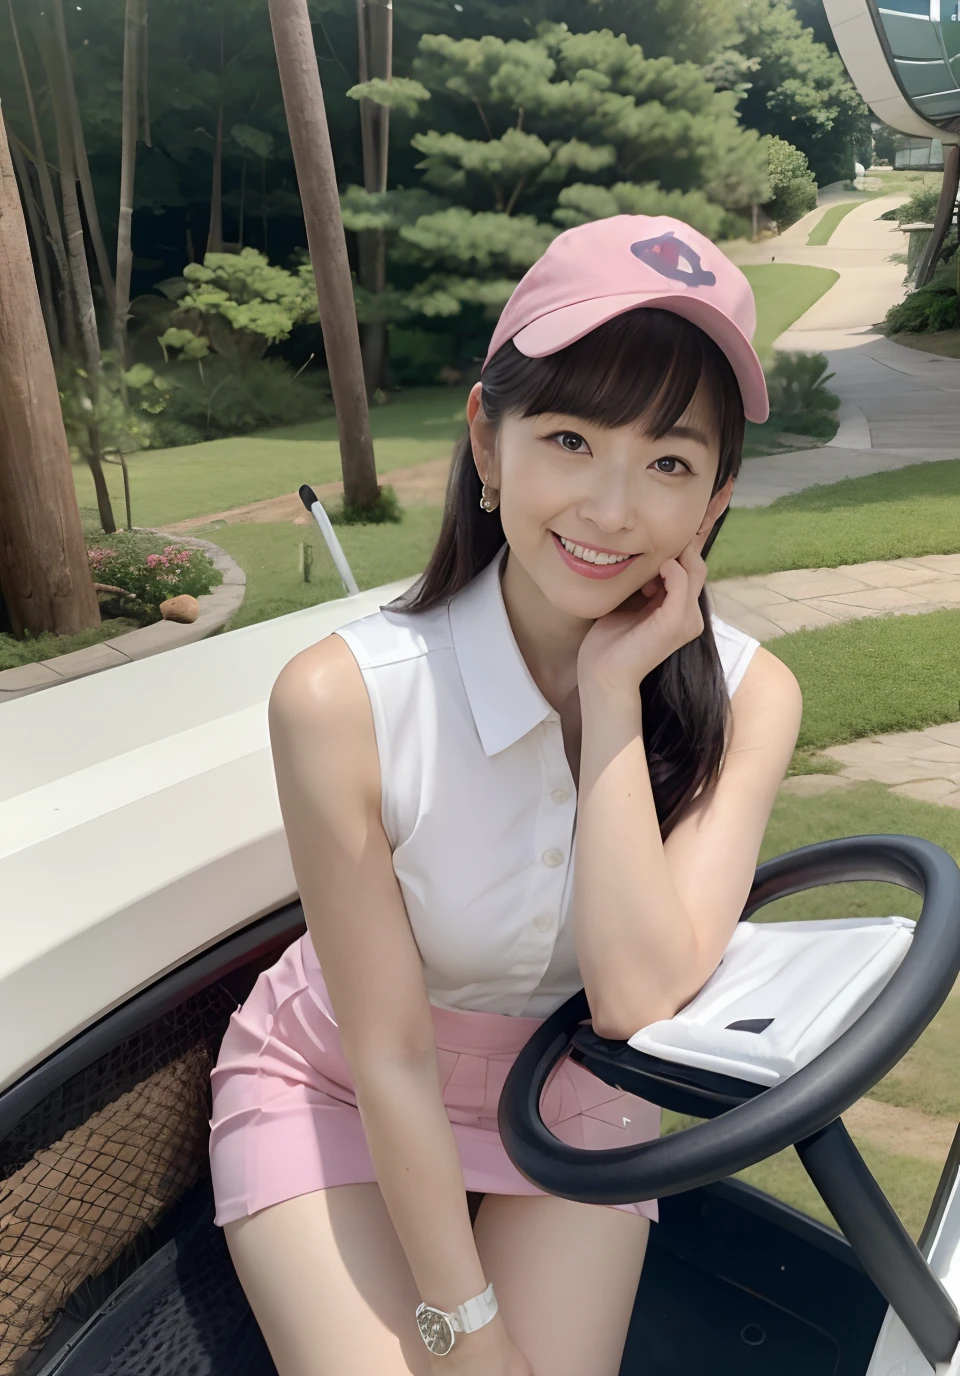 GOLFのラウンド中に40歳の日本女性を覗く、ボブカット、濃い化粧、目が大きい、1人の女性、ゴルフカートの前でセクシーなポーズ、ノースリーブのドレスと超短いミニスカートのゴルフウェアを着た女性、かわいいタイトなゴルフウェア、サンバイザー、(ピンクと白のゴルフウェア)、メイクで黒目、大きな垂れ目、笑顔、低い角度